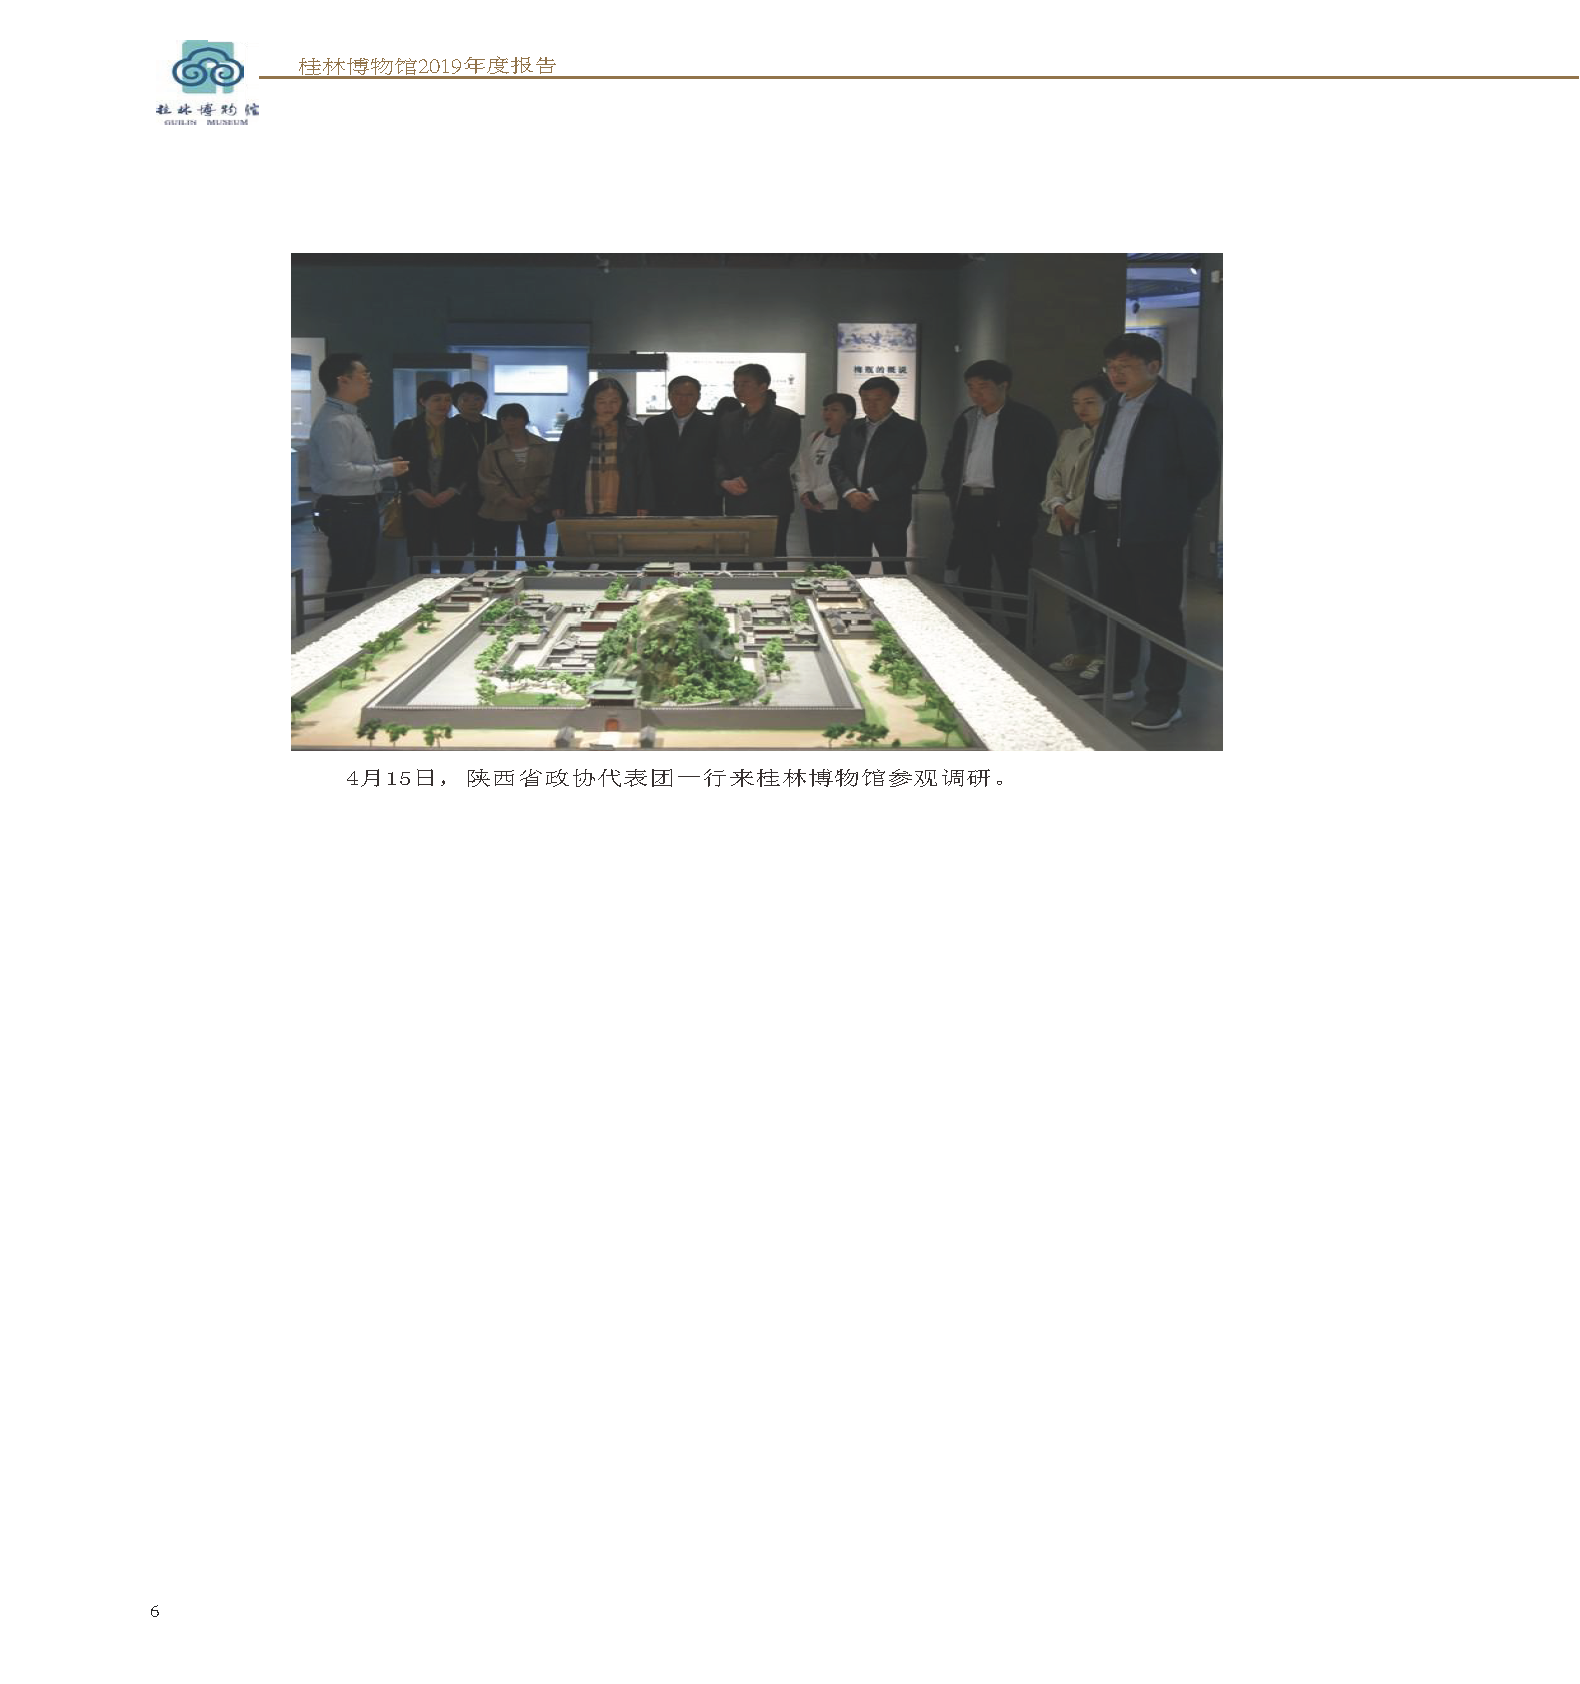 桂林博物馆2019年度报告.pdf_页面_008.png